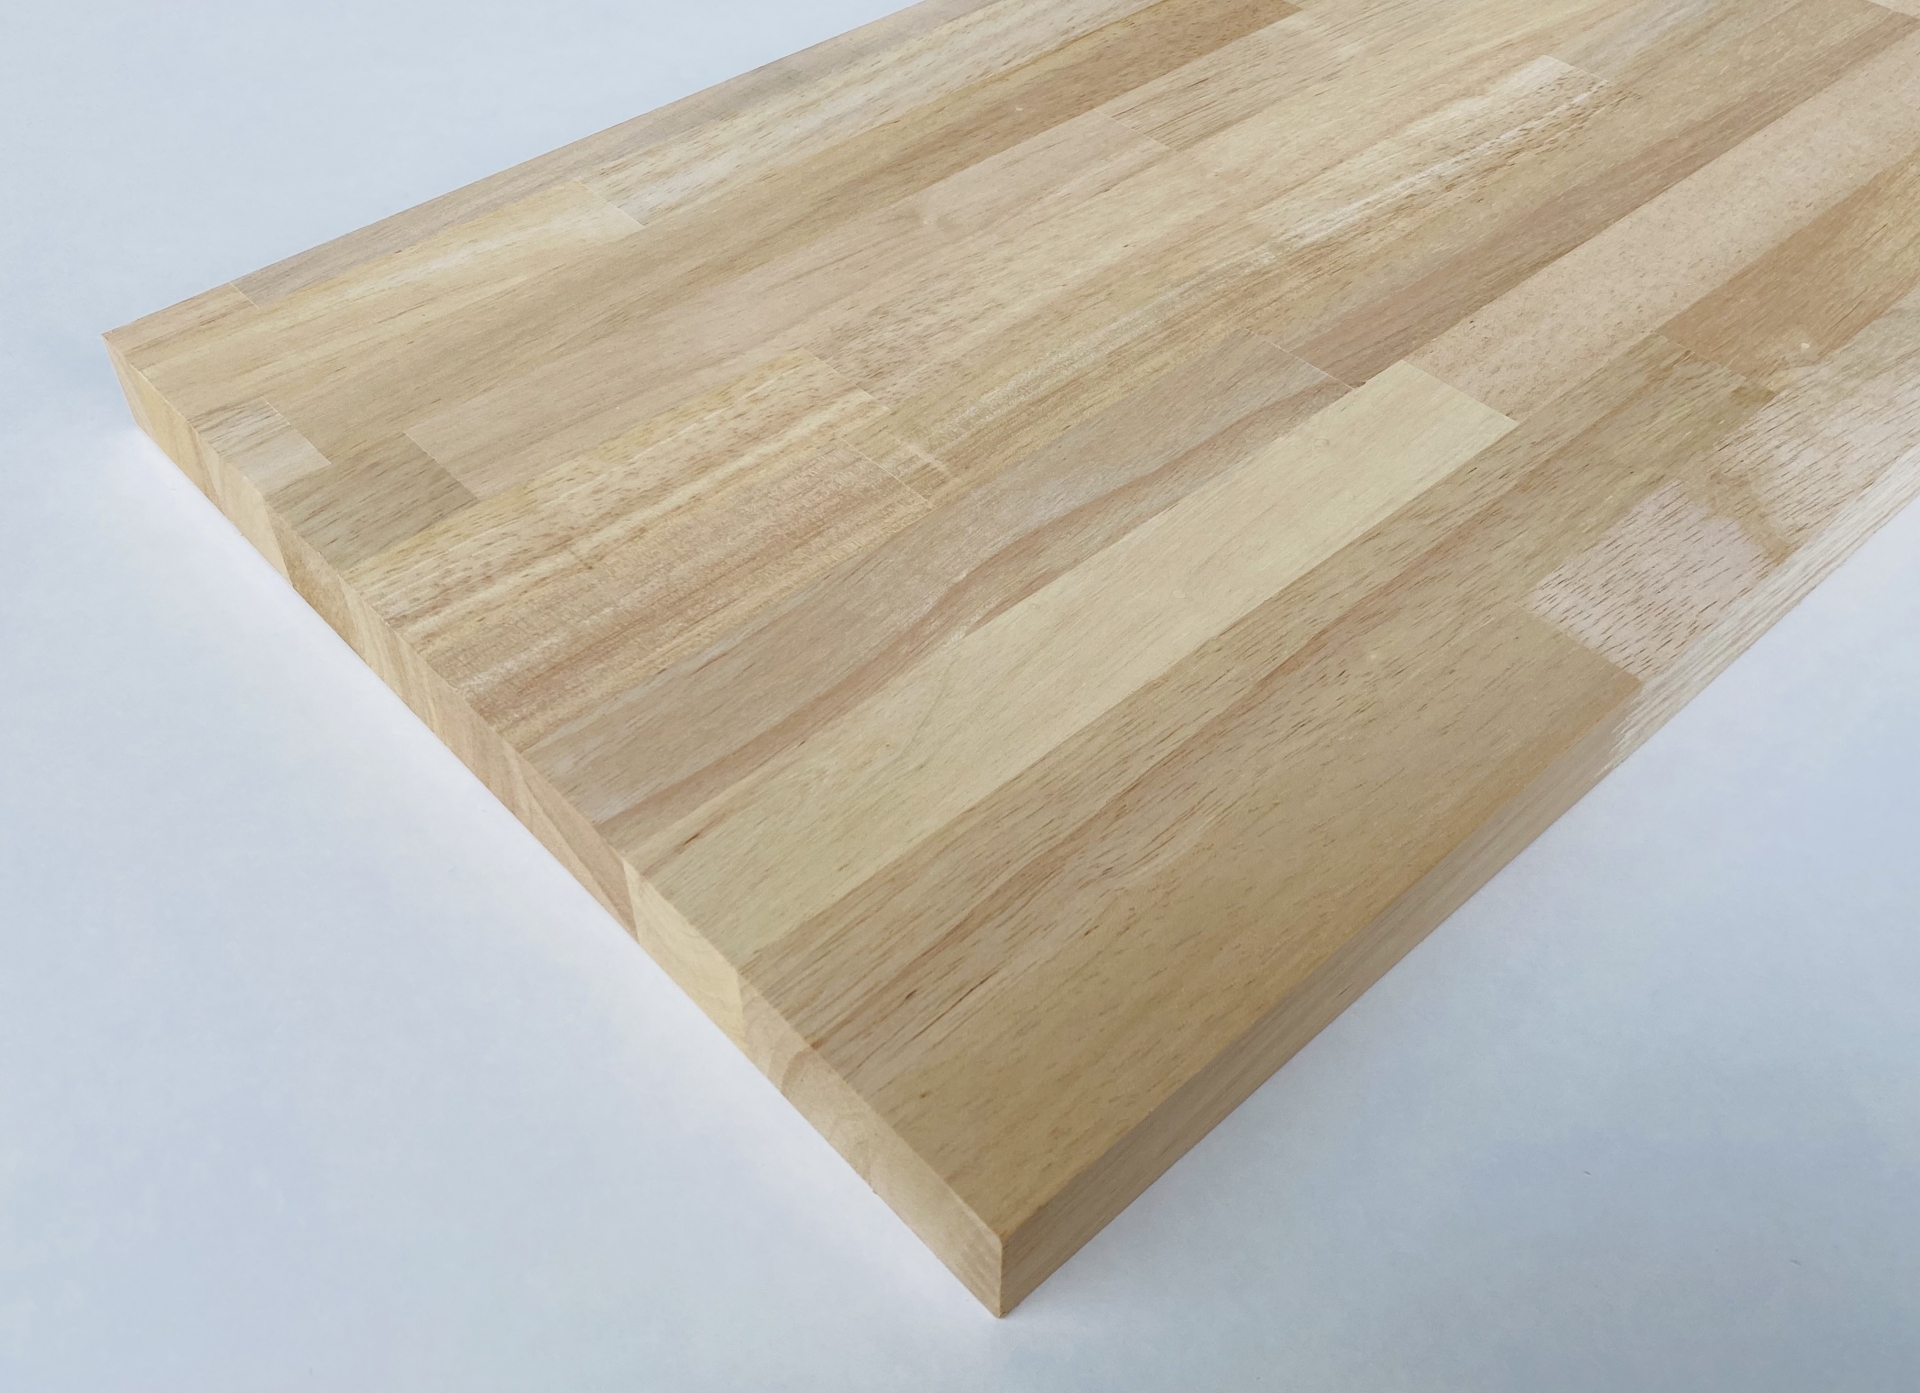 木材 タモ集成材 フリー板 25mm厚 幅600mm 長さ1800mm 1枚 diy 天板 棚板 材料 (事業所向け) - 2